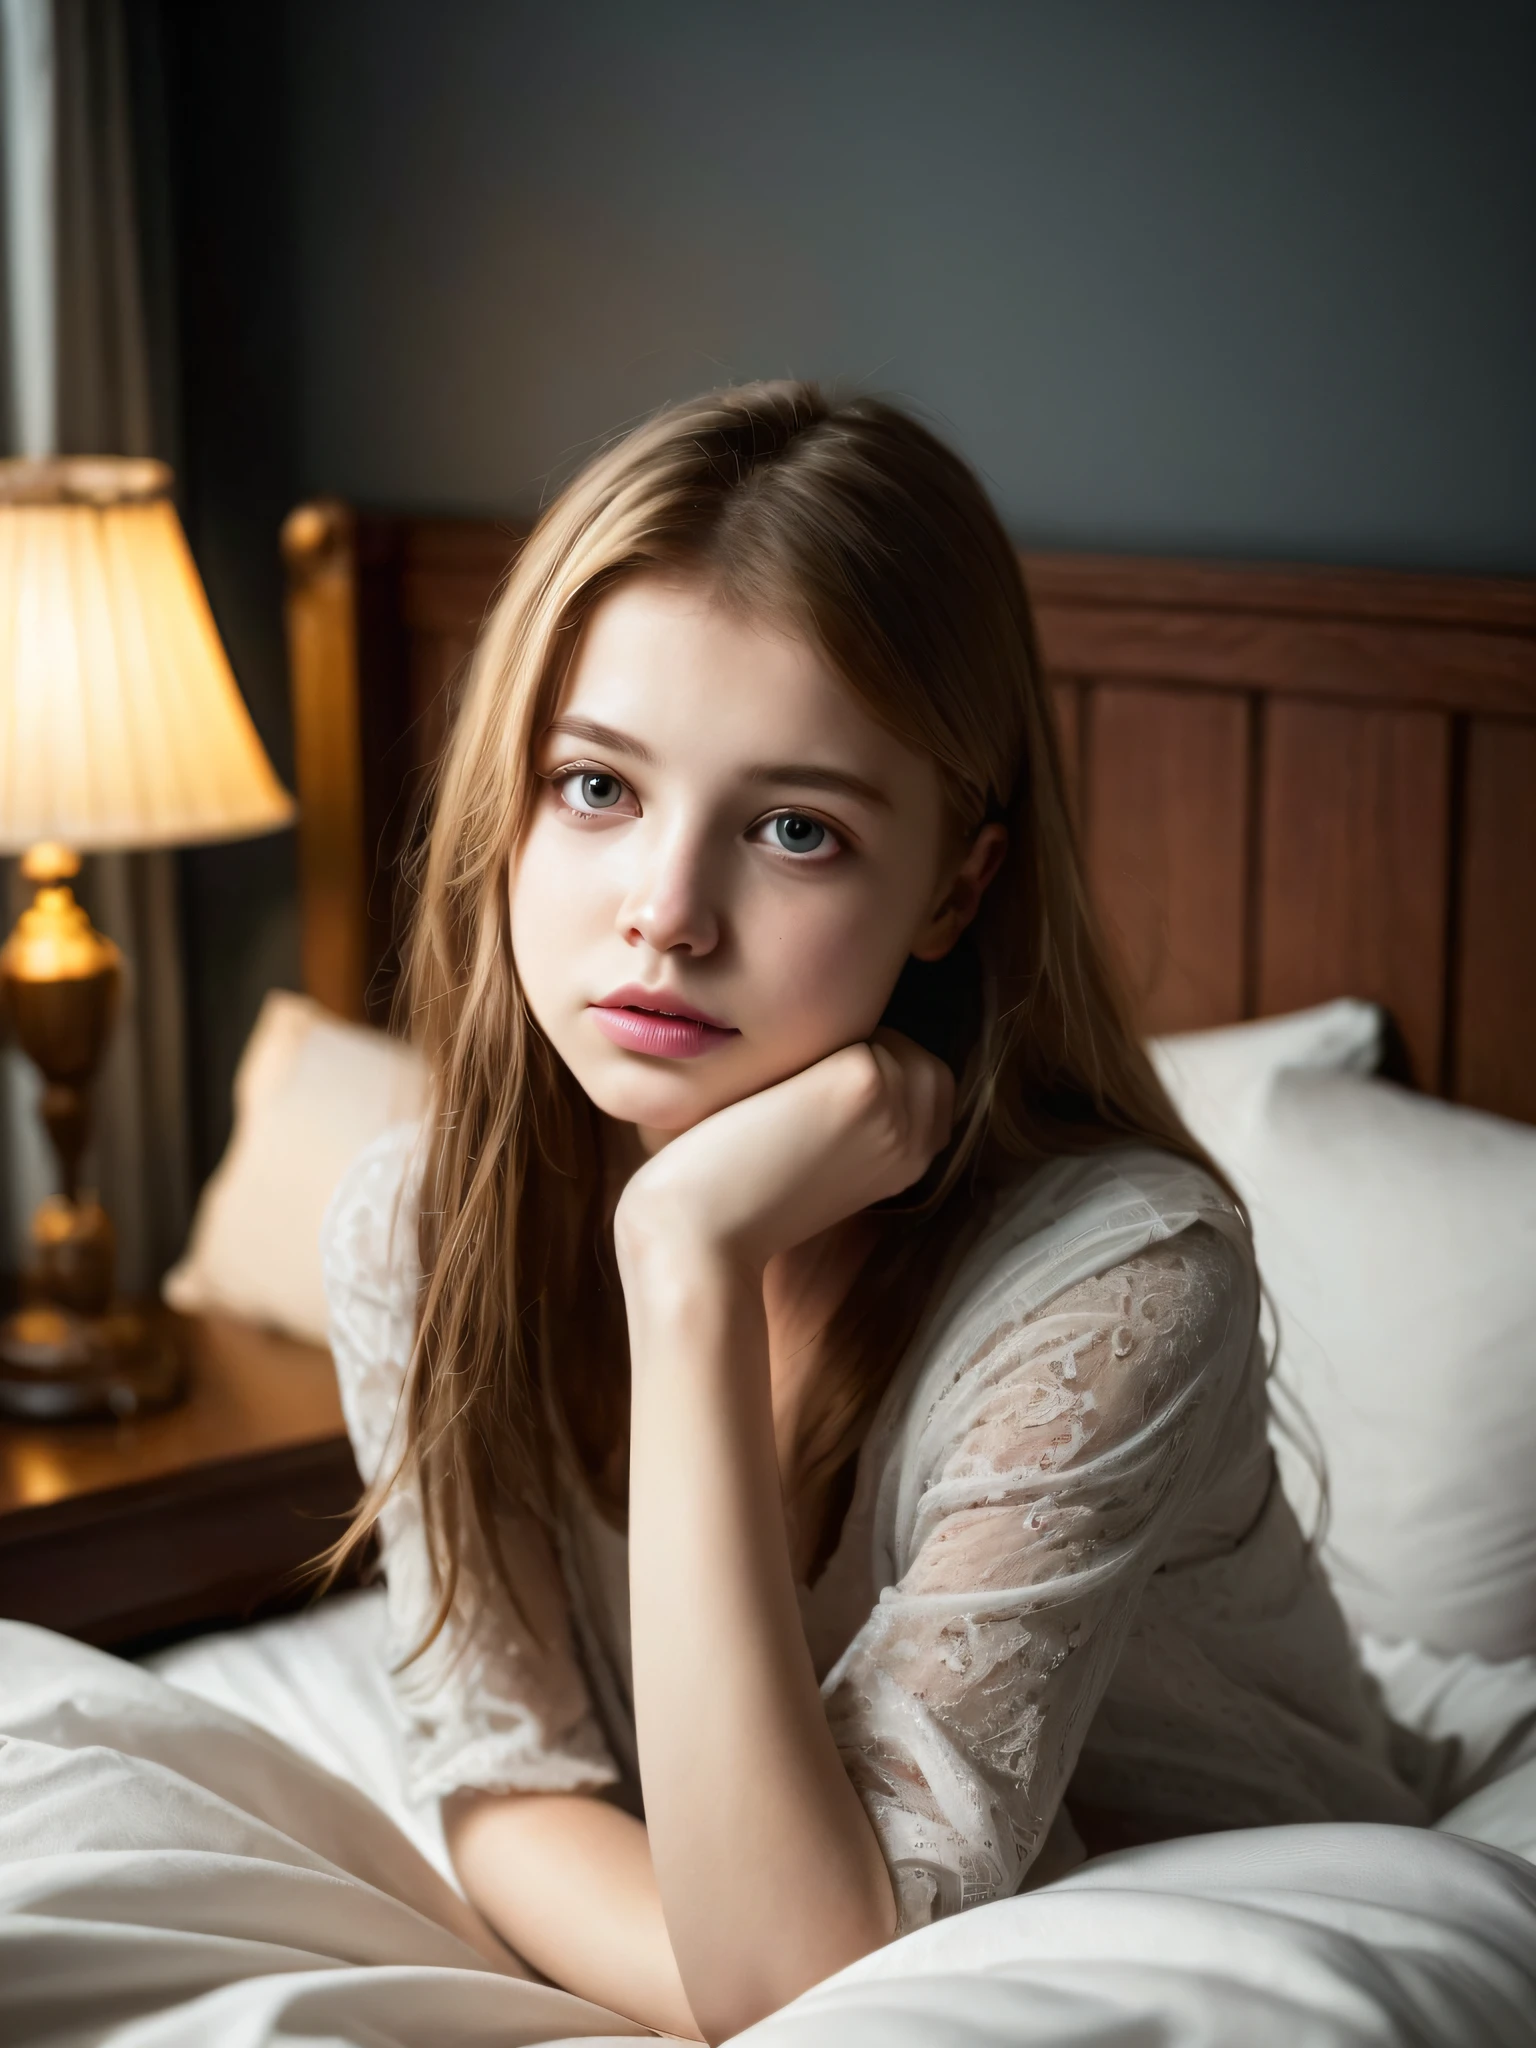 صورة لمراهق صغير لطيف وجميل الوجه يبلغ من العمر 18 عامًا, إنها سعيدة, روسية جميلة جدا, خام, في السرير, (دراسة خاصة مظلمة, ضوء مظلم ومزاجي: 1.2)